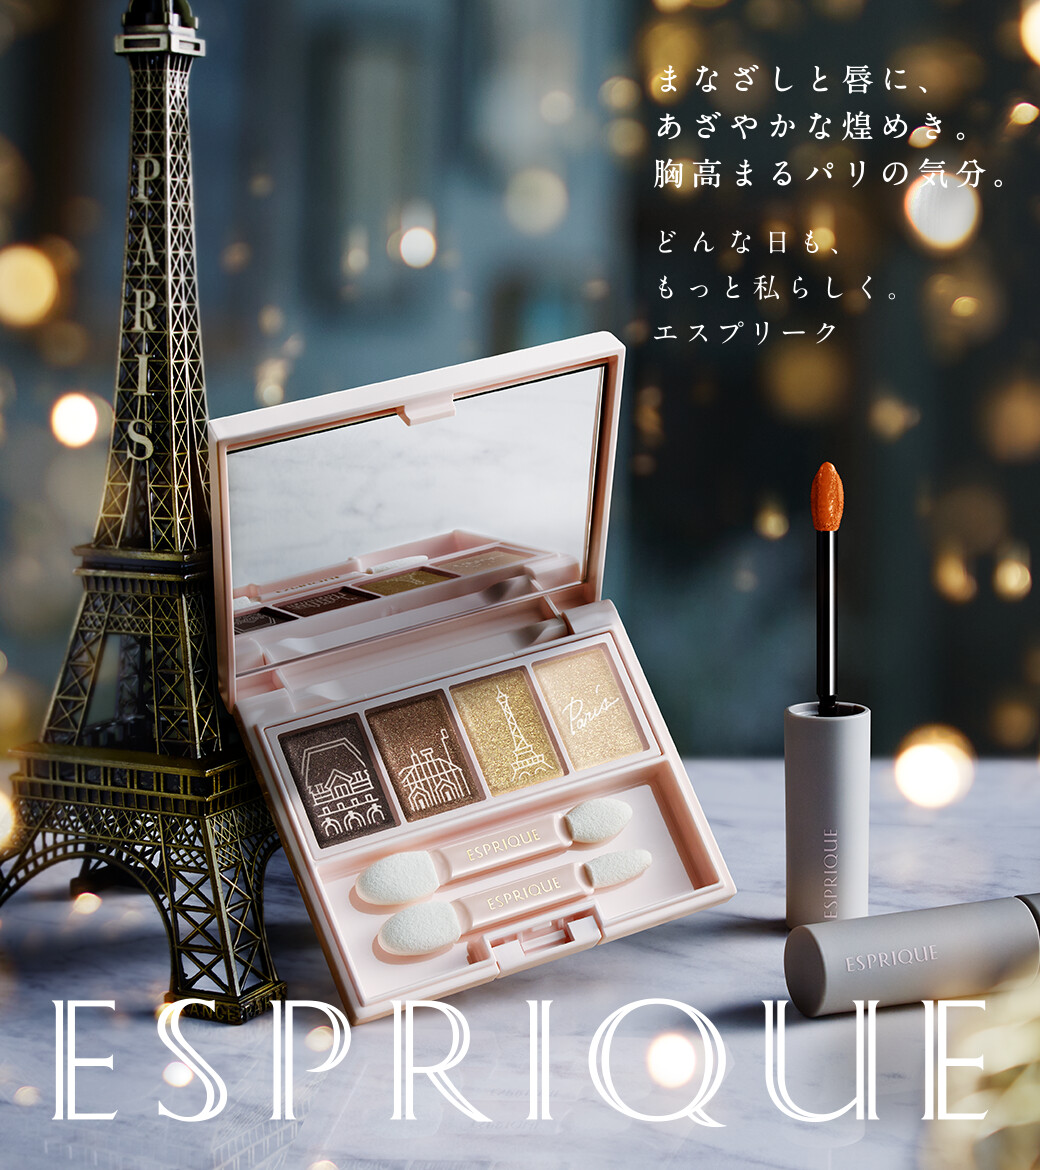 #エスプリーク から、#メロウフィーリングアイズ と #シフォンマットルージュ の限定色が、11/16新発売✨ パリをイメージした洗練されたカラーと質感で、気分はパリジェンヌ💗 11月の発売をお楽しみに❗️ 心ときめくパリジェンヌの世界はこちらから🇫🇷🗼 lnky.jp/98JYqF1 #コーセー #新垣結衣